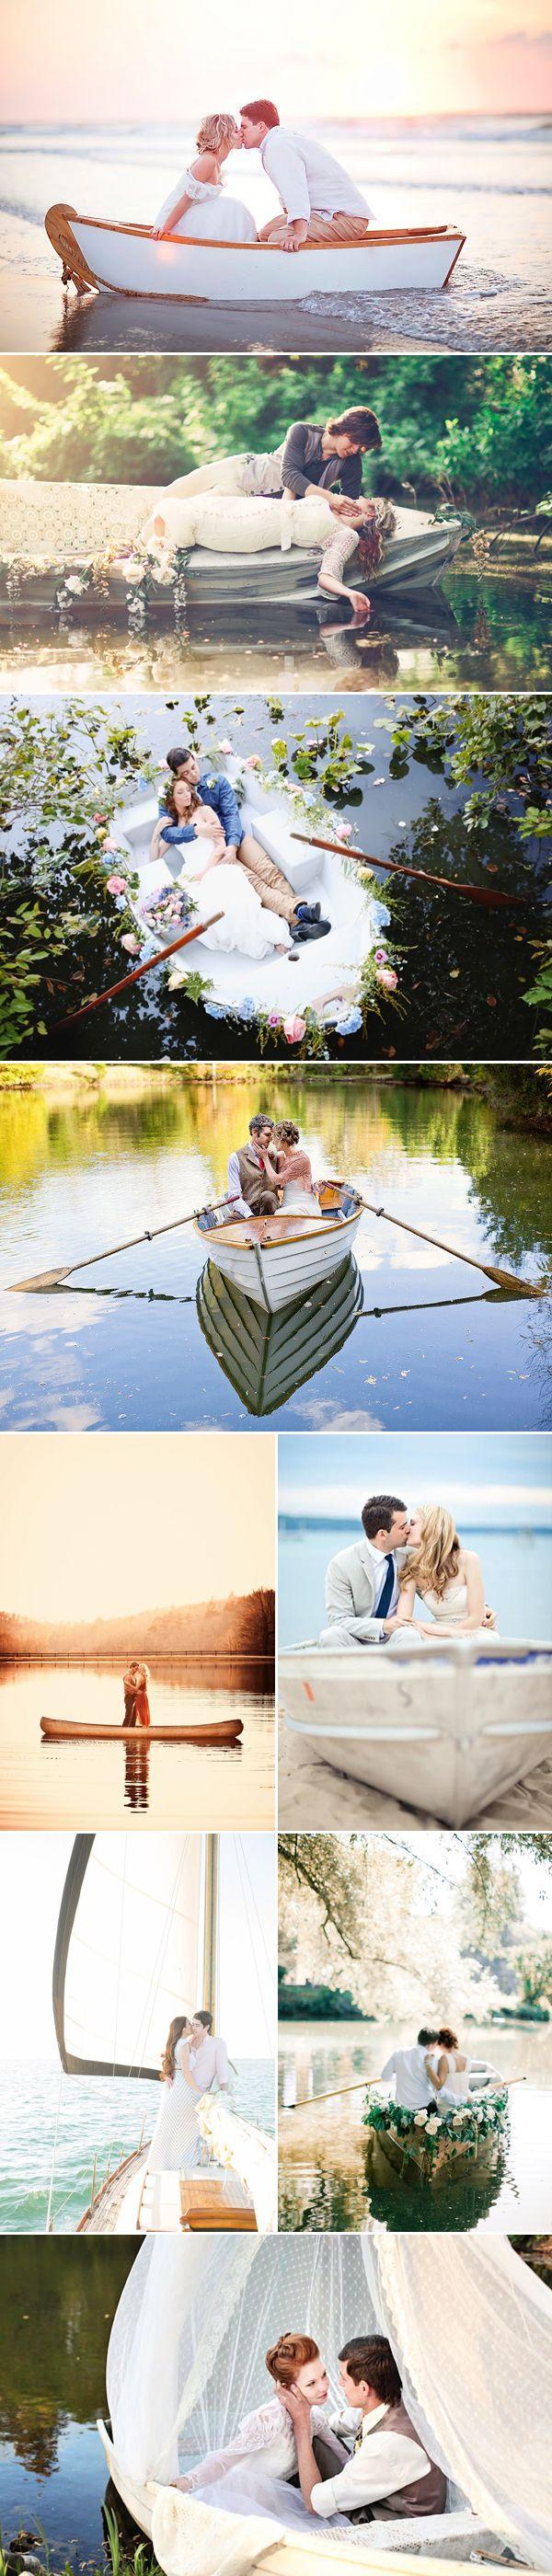 زفاف - Romantic Love-Boat Engagement Photo Ideas — Praise Wedding